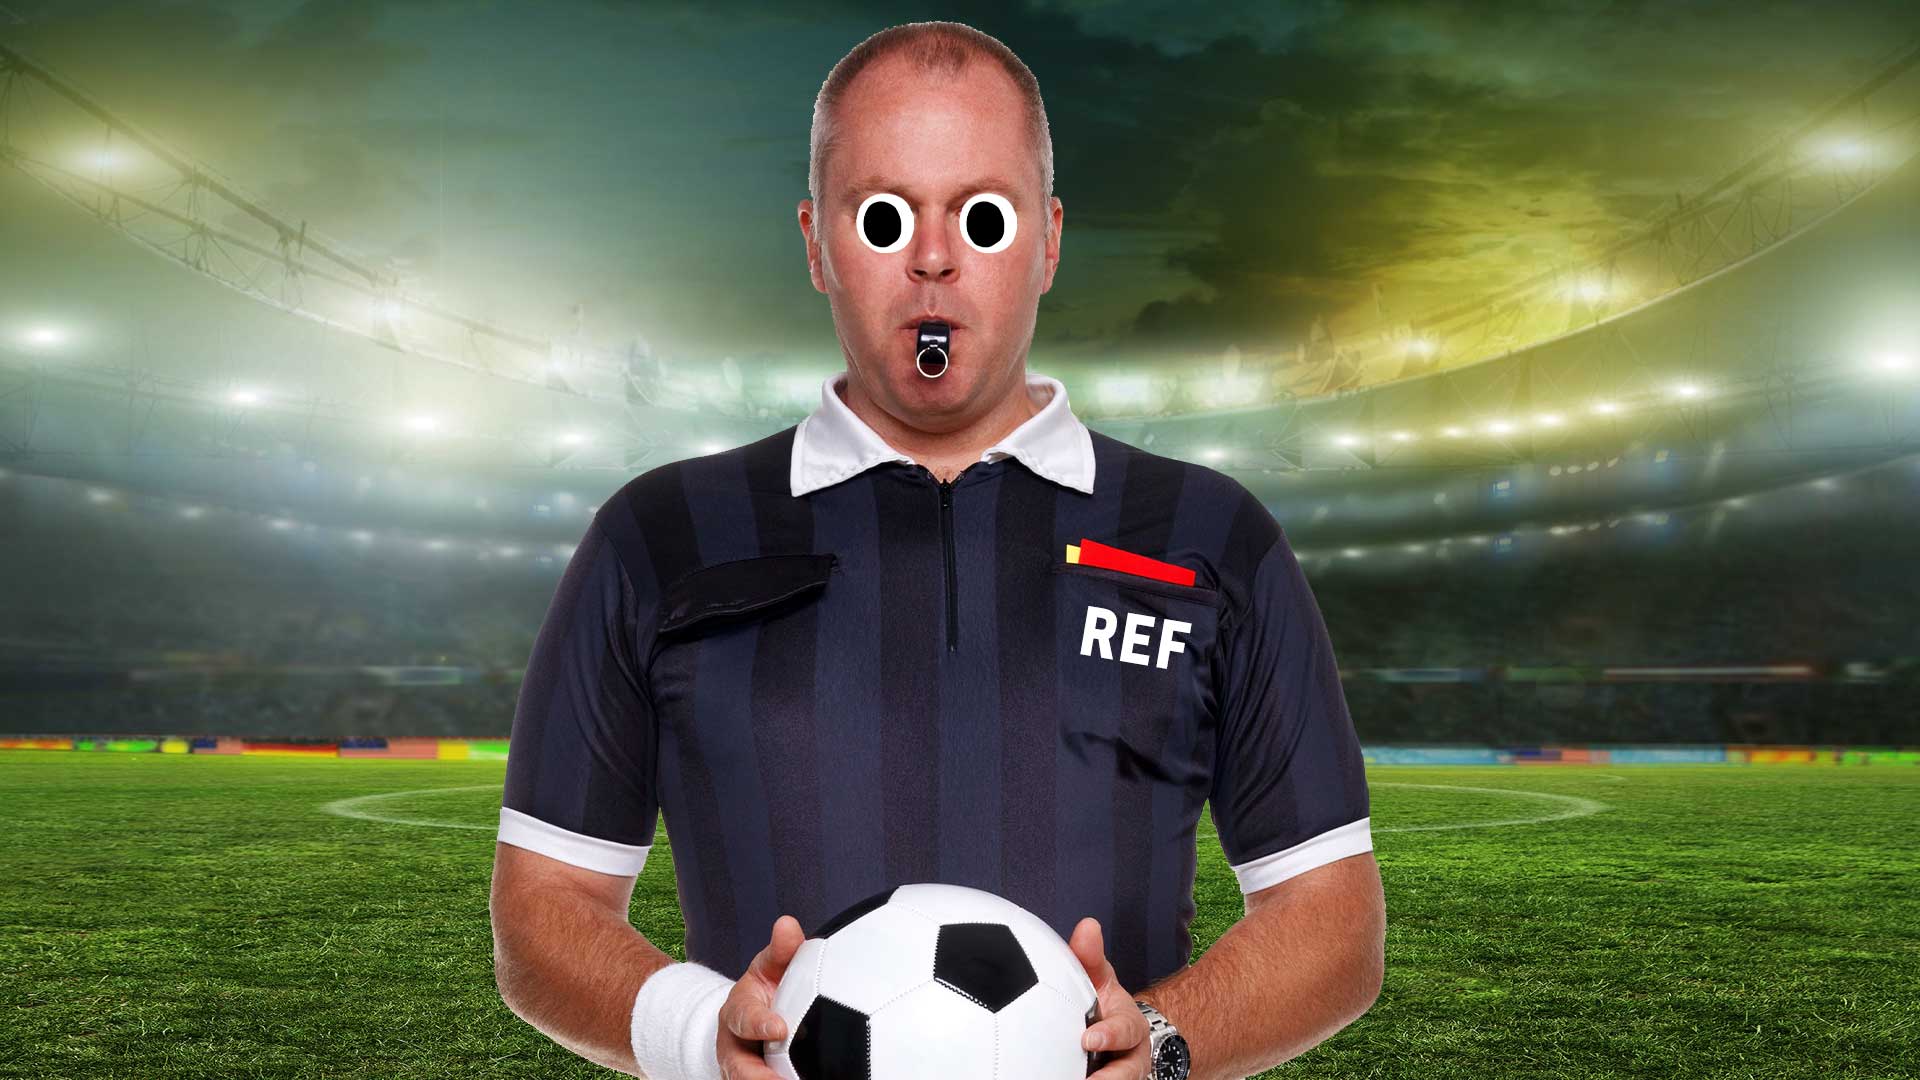 A referee